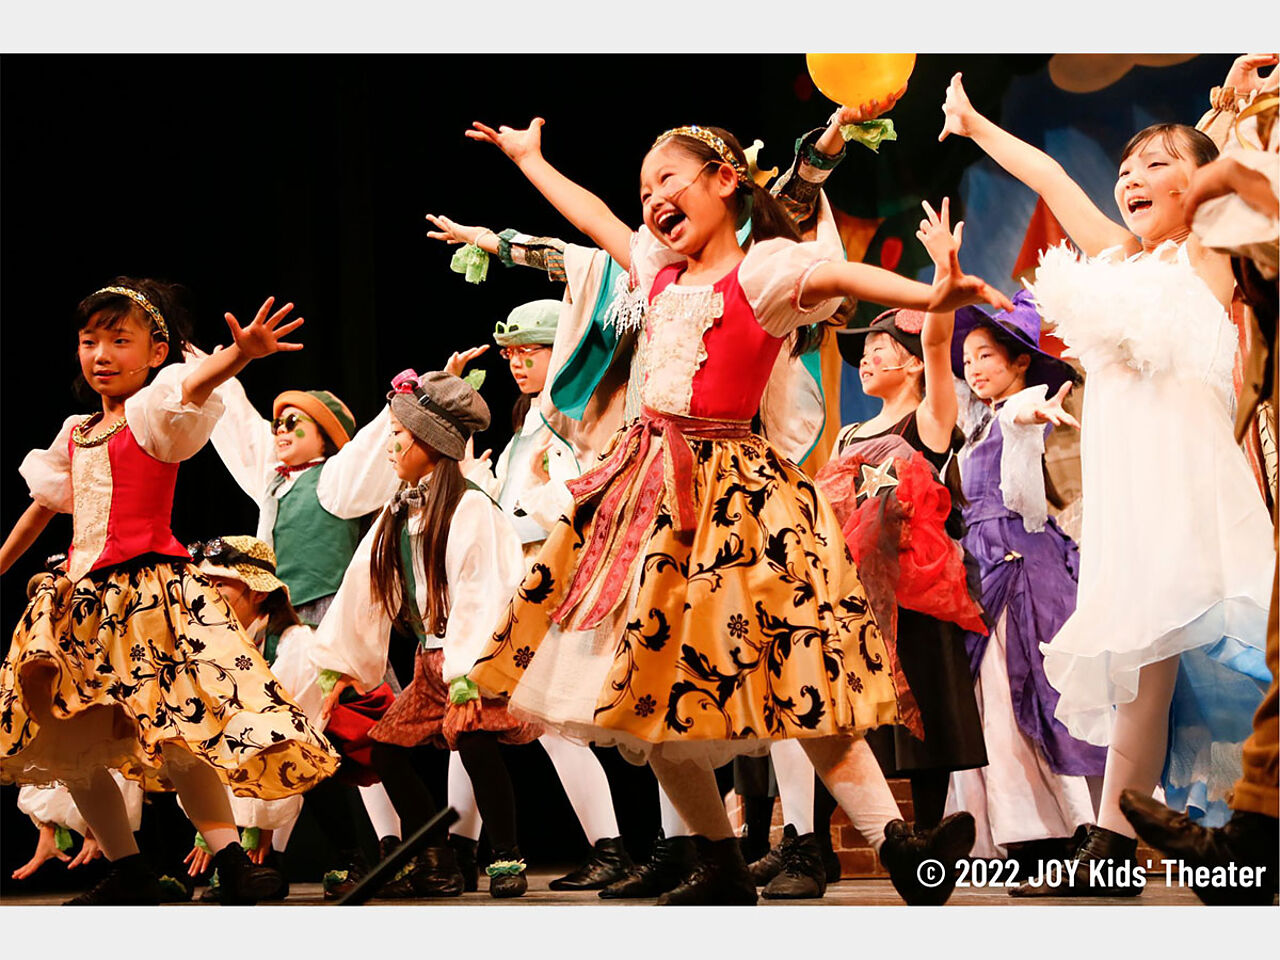 JOY Kids’ Theaterの公演の際の画像